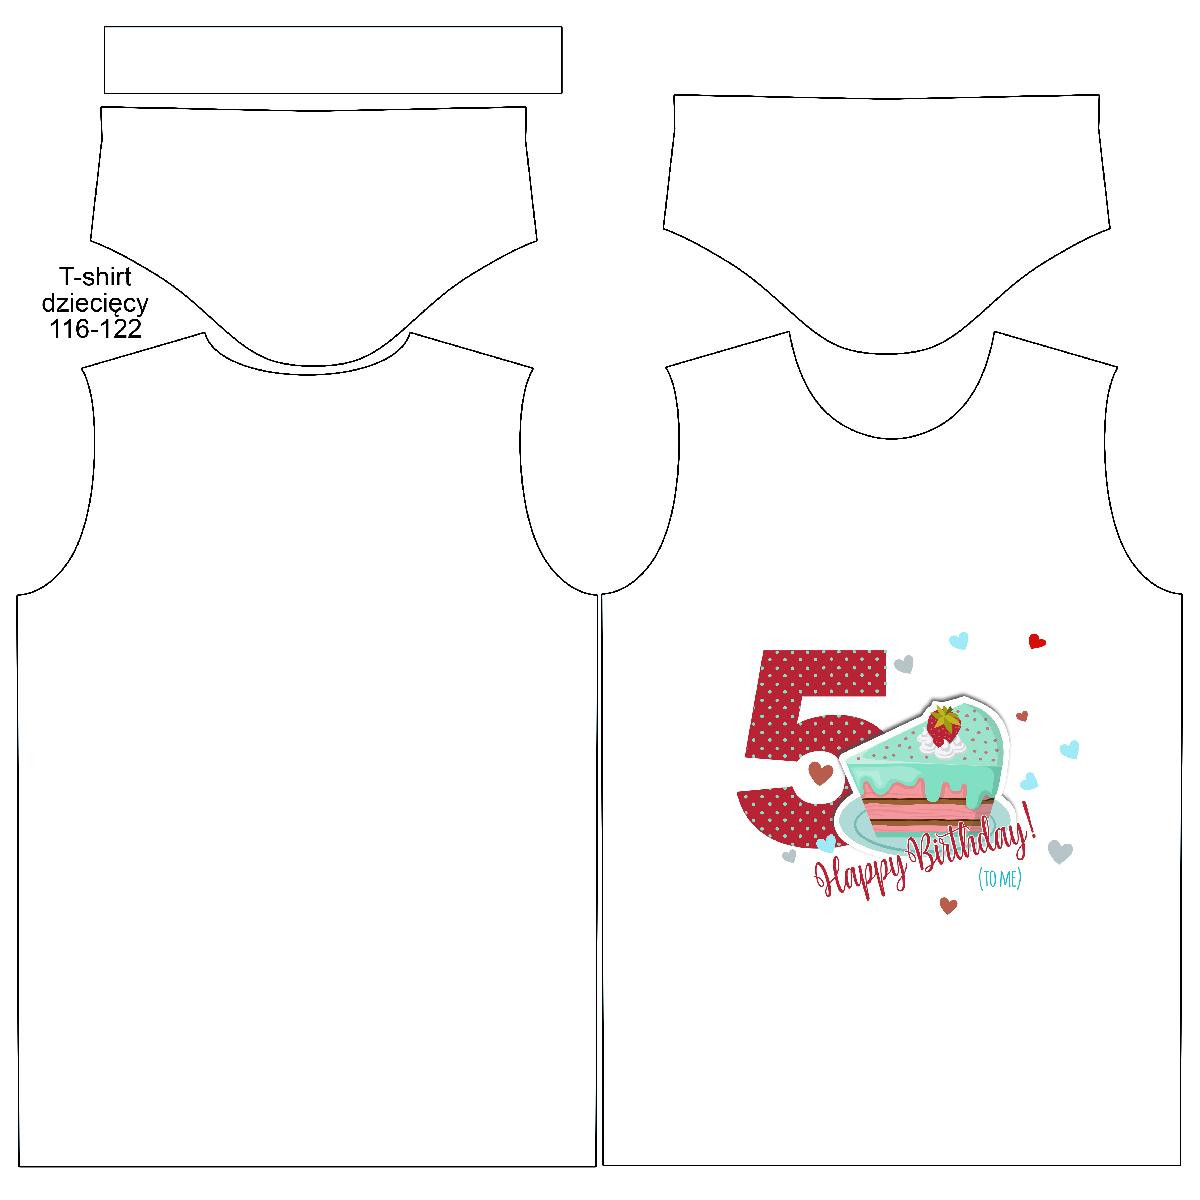 T-SHIRT DZIECIĘCY - 5. URODZINY / TORT - single jersey